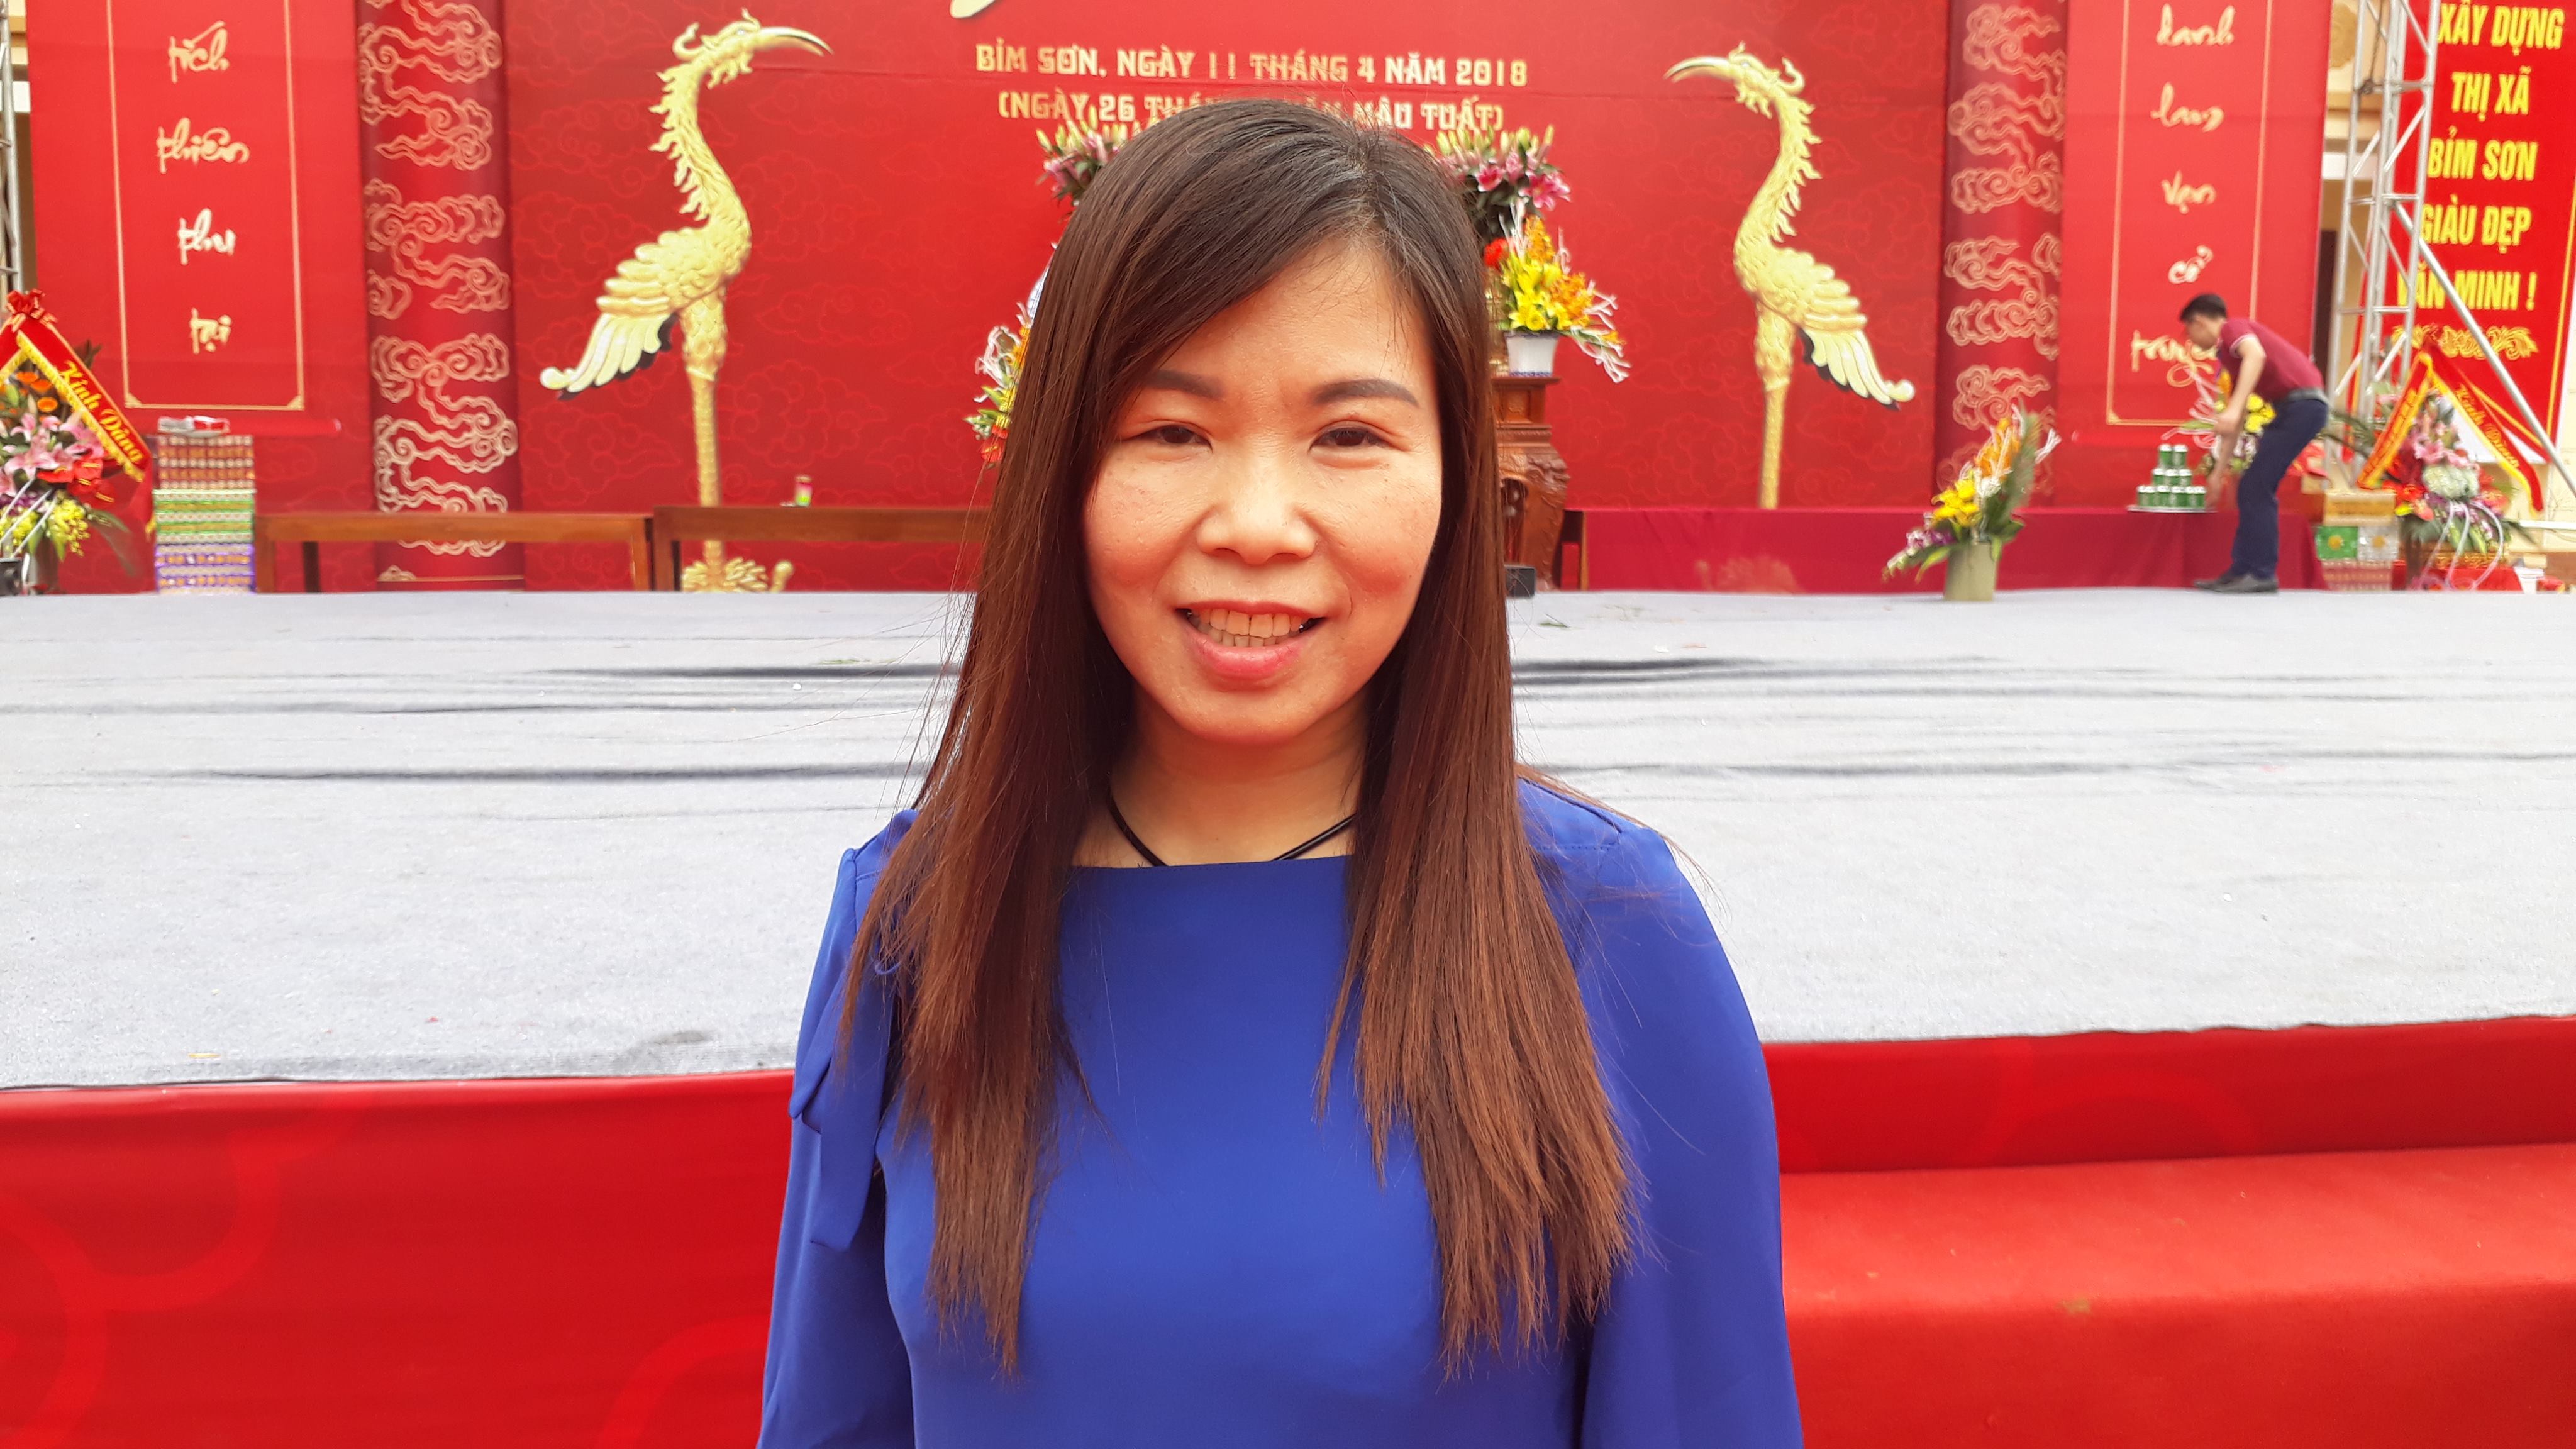 Chị Nguyễn Thúy Hạnh, huyện Nga Sơn cho biết: Lễ hội Sòng Sơn – Ba Dội năm nay đã tạo được không gian văn hóa - Lễ hội tôn nghiêm, vui tươi và an toàn cho nhân dân và du khách đến dự lễ.